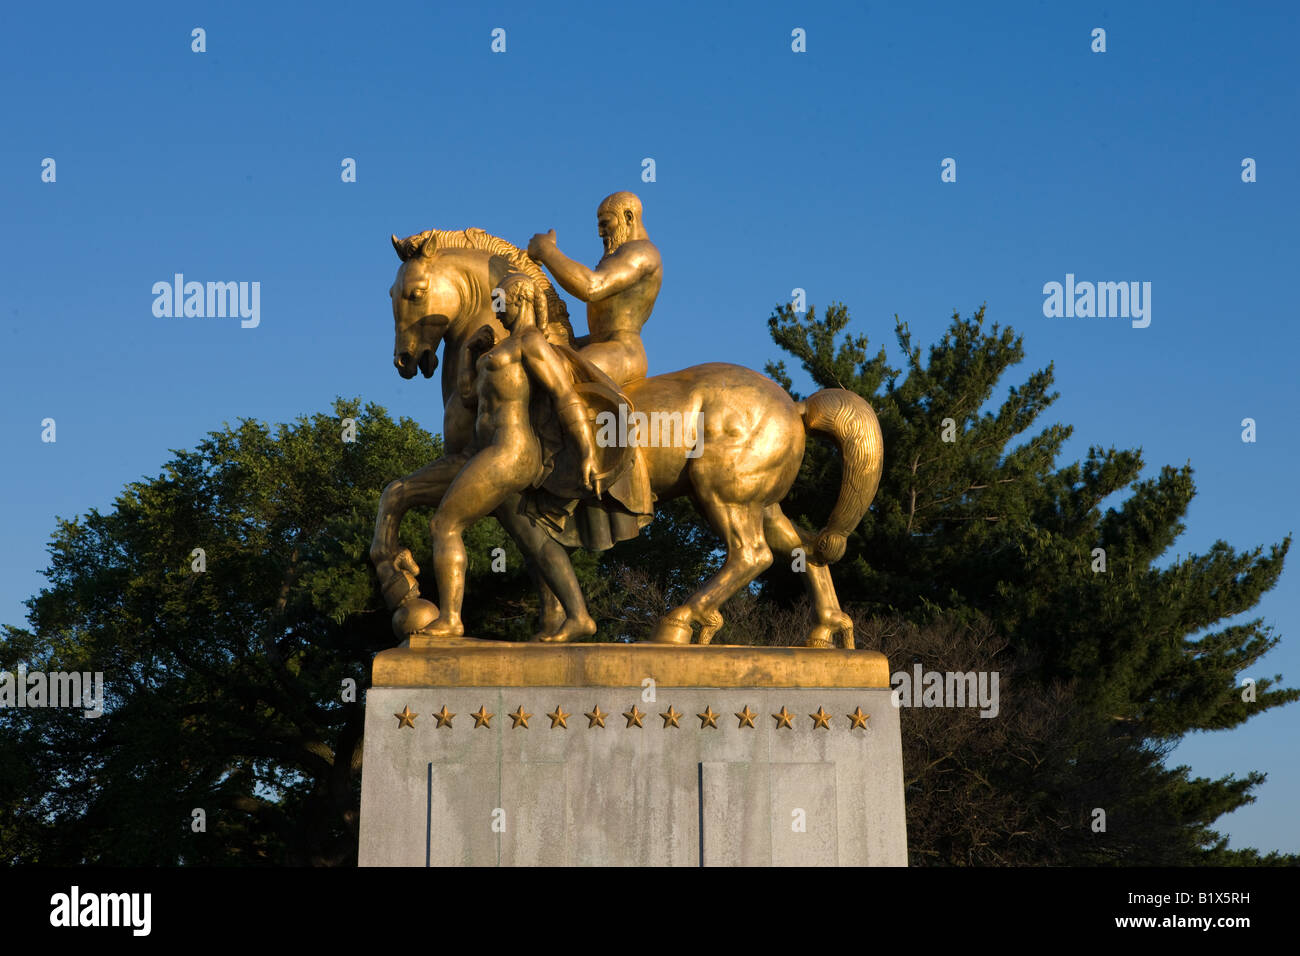 Situation de l'homme sur un cheval d'or se trouve un haut l'Arlington Memorial Bridge sur le Washington DC côté de la rivière Potomac Banque D'Images